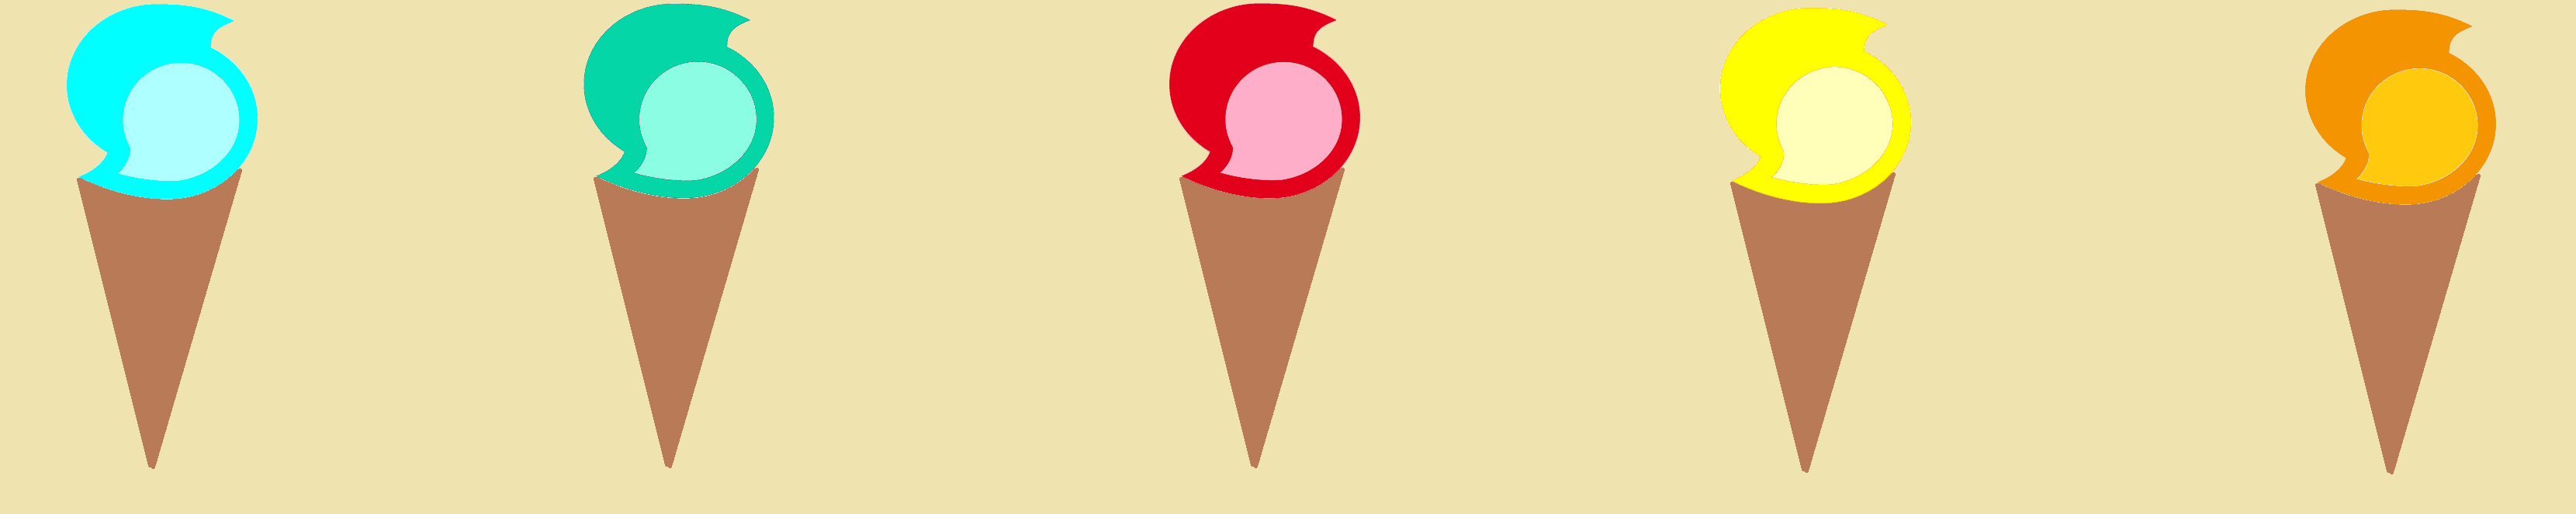 ice_cream_cones.png